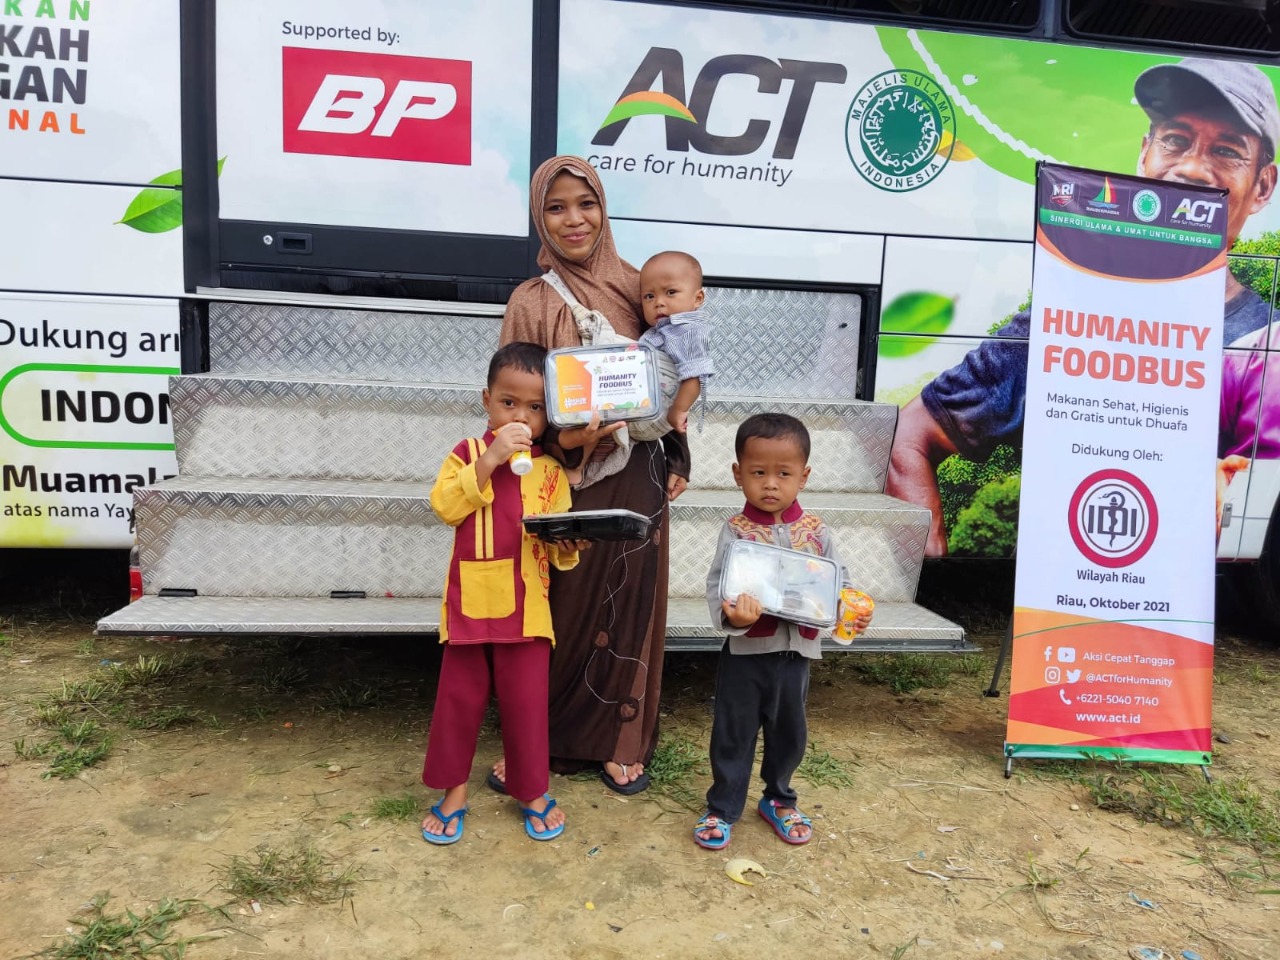 Peringati Hari Dokter Nasional, IDI Wilayah Riau Hadirkan Humanity Food Bus